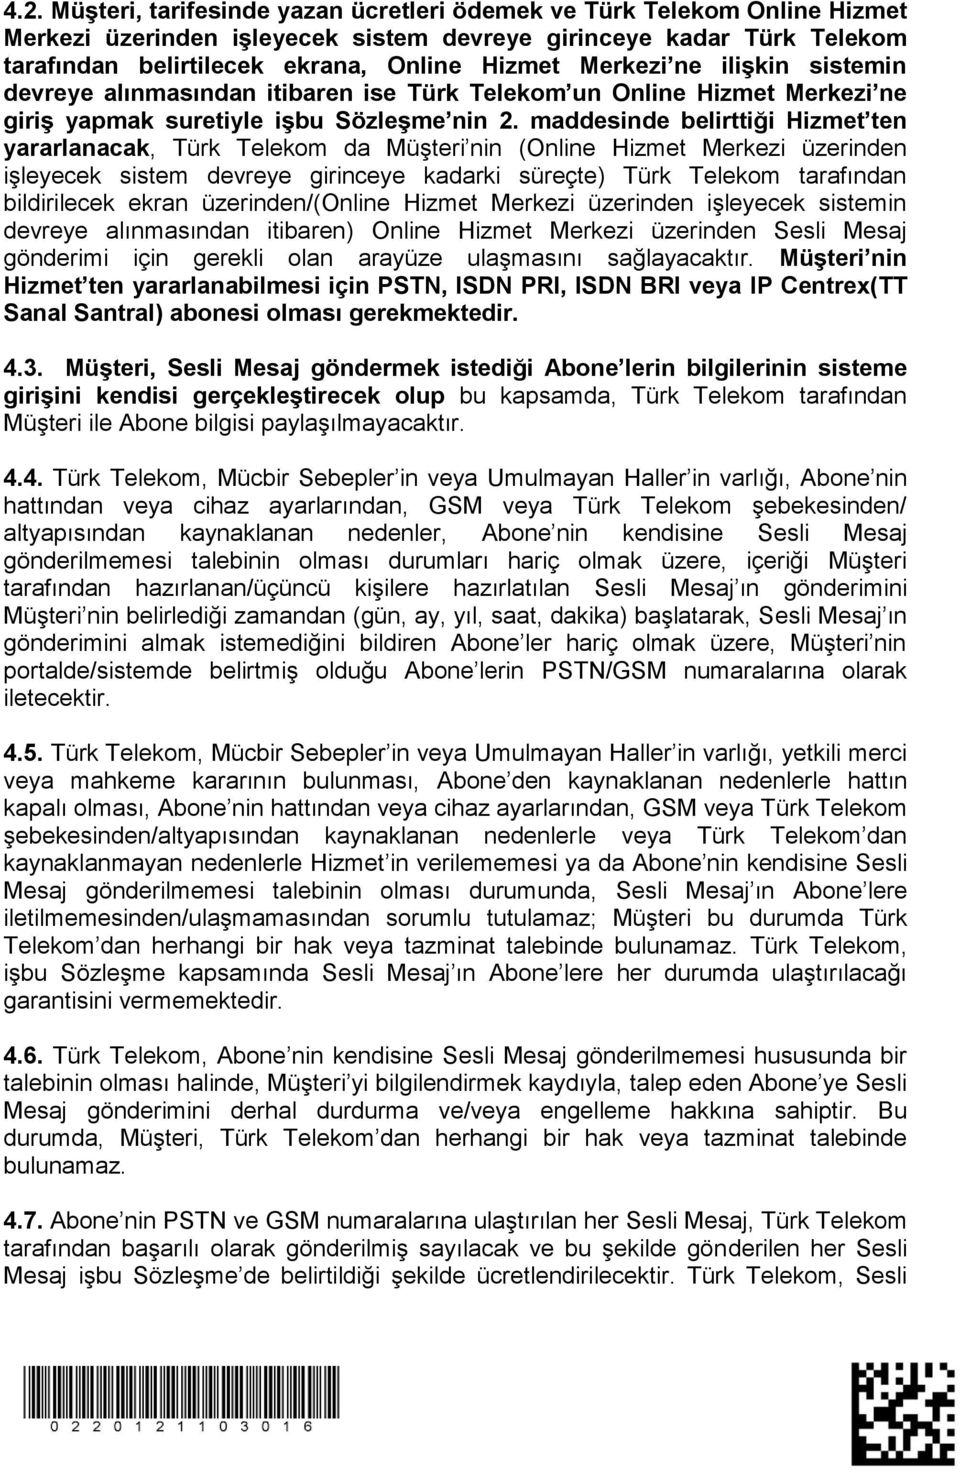 maddesinde belirttiği Hizmet ten yararlanacak, Türk Telekom da Müşteri nin (Online Hizmet Merkezi üzerinden işleyecek sistem devreye girinceye kadarki süreçte) Türk Telekom tarafından bildirilecek